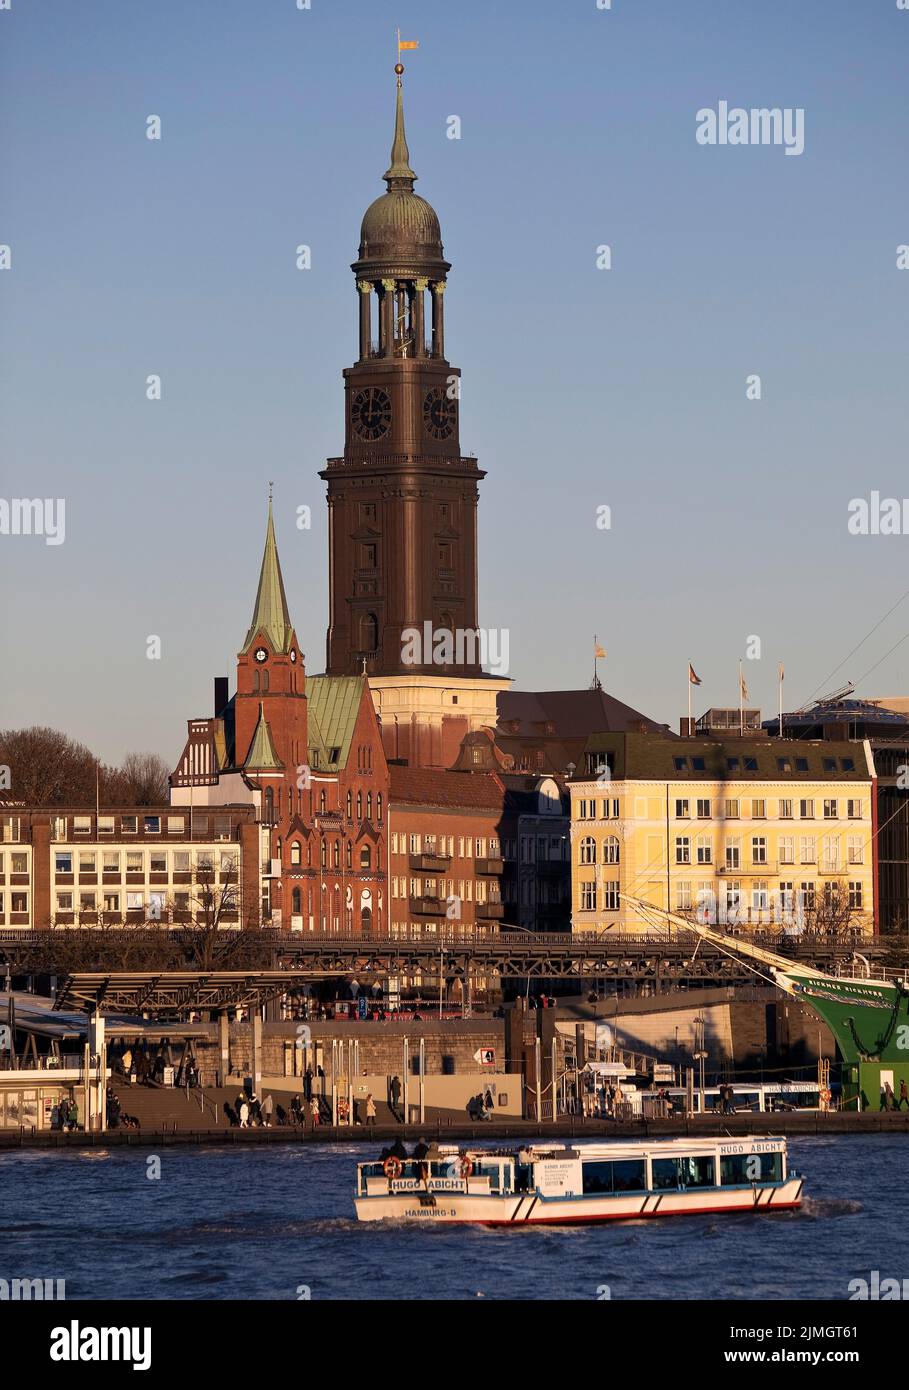 Vue sur l'Elbe du Nord jusqu'au clocher de l'église principale St. Michaelis, Hambourg, Allemagne, Europe Banque D'Images